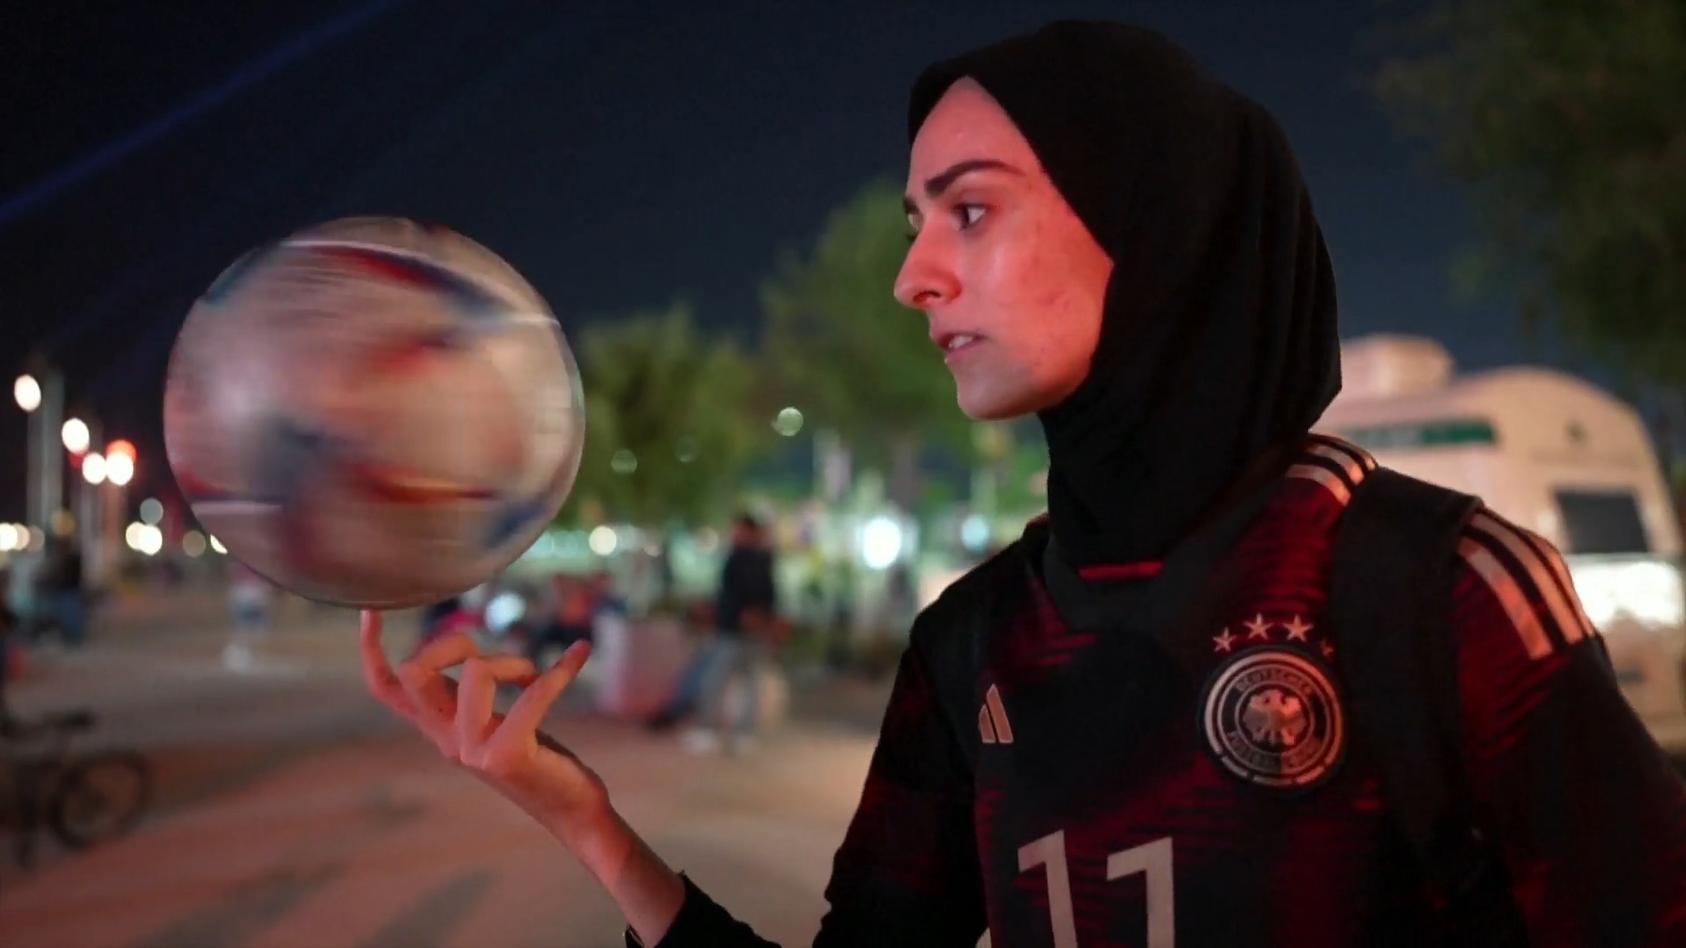 freestylerin-begeistert-bei-wm-junge-iranierin-vernascht-fans-mit-ihren-fuball-tricks